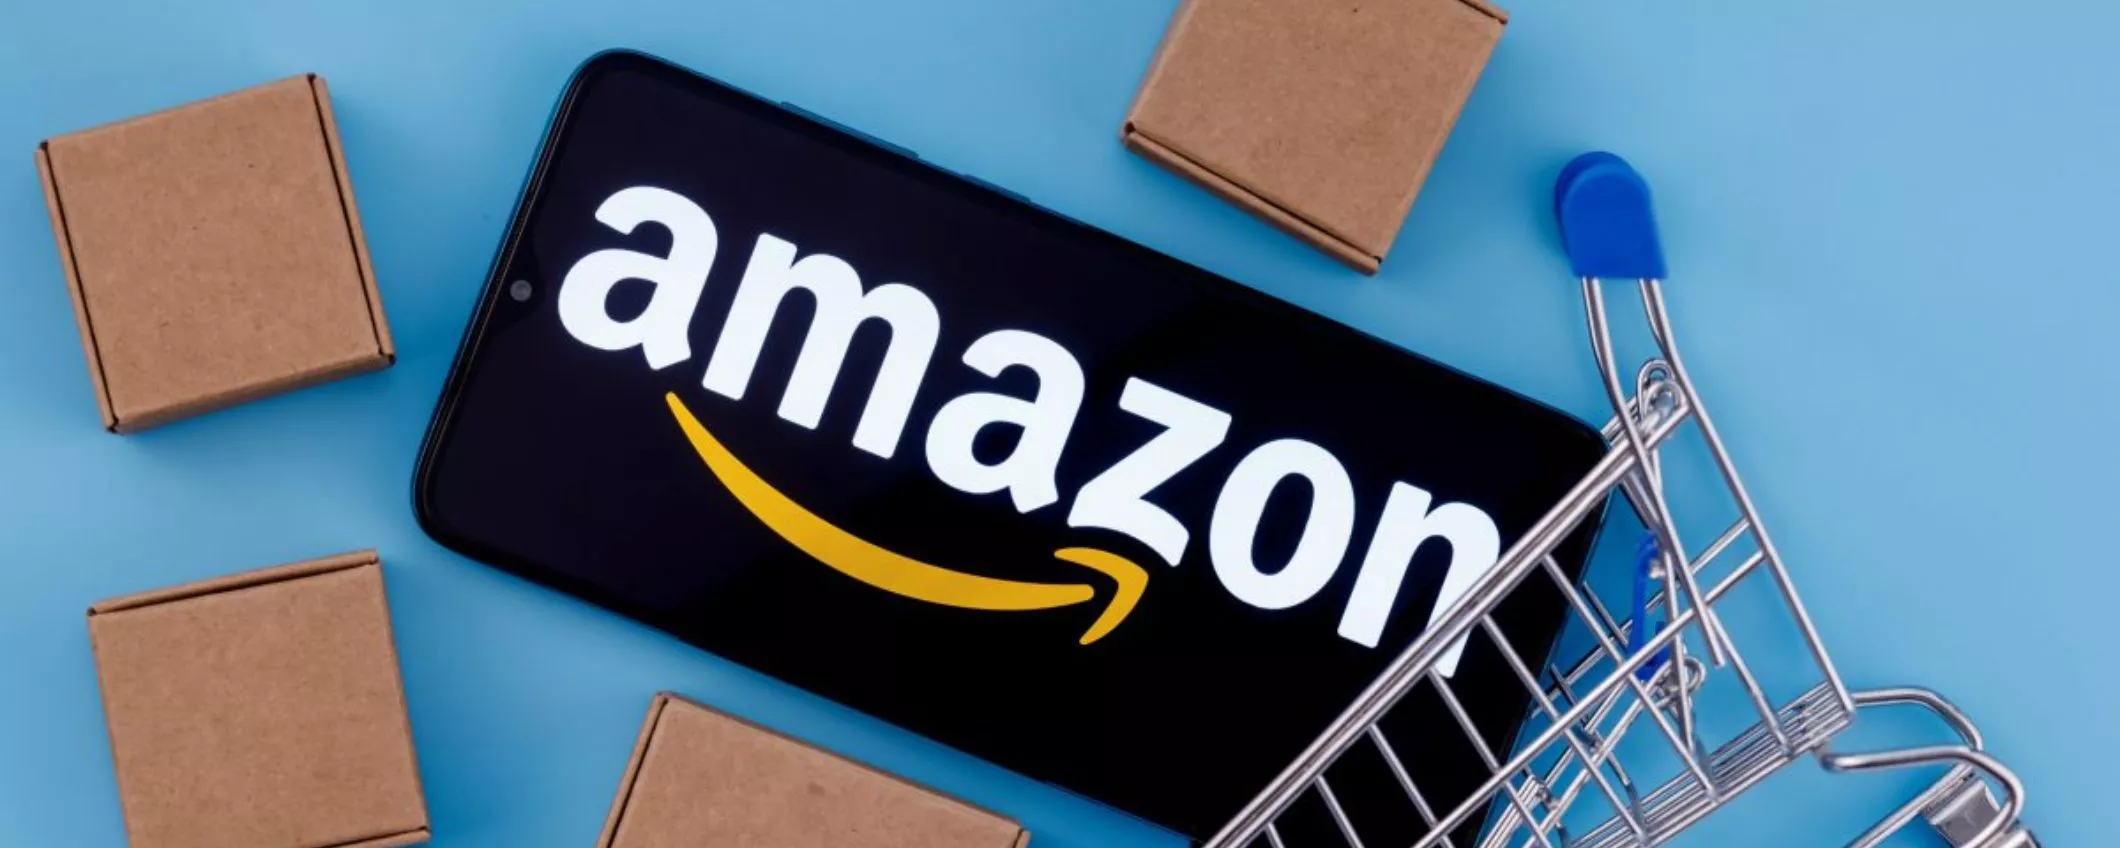 Amazon: in arrivo altri 1000 posti di lavoro entro fine anno in Italia